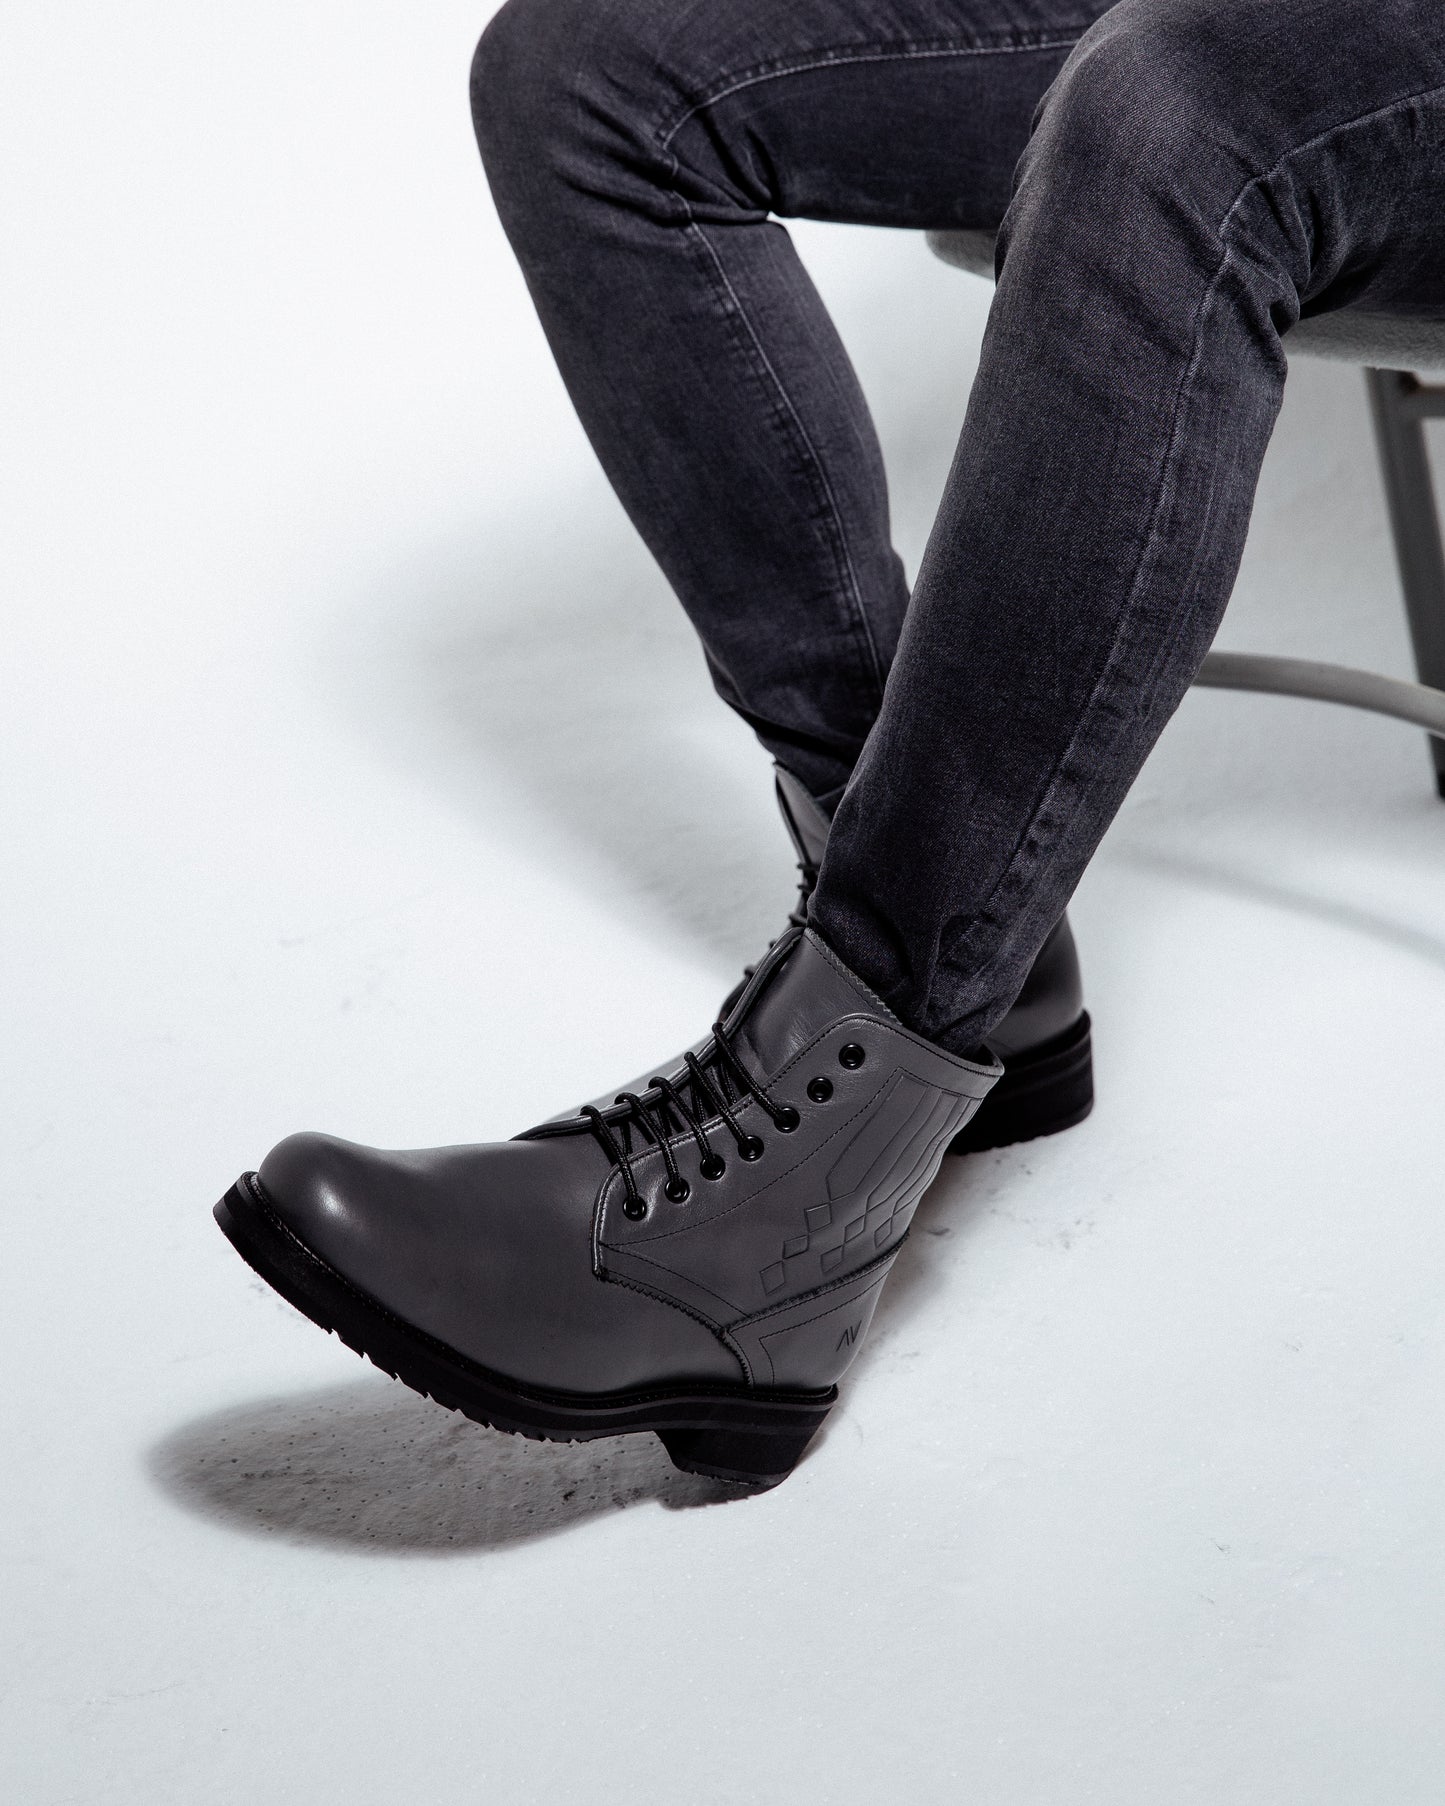 Men Grey boots -7012